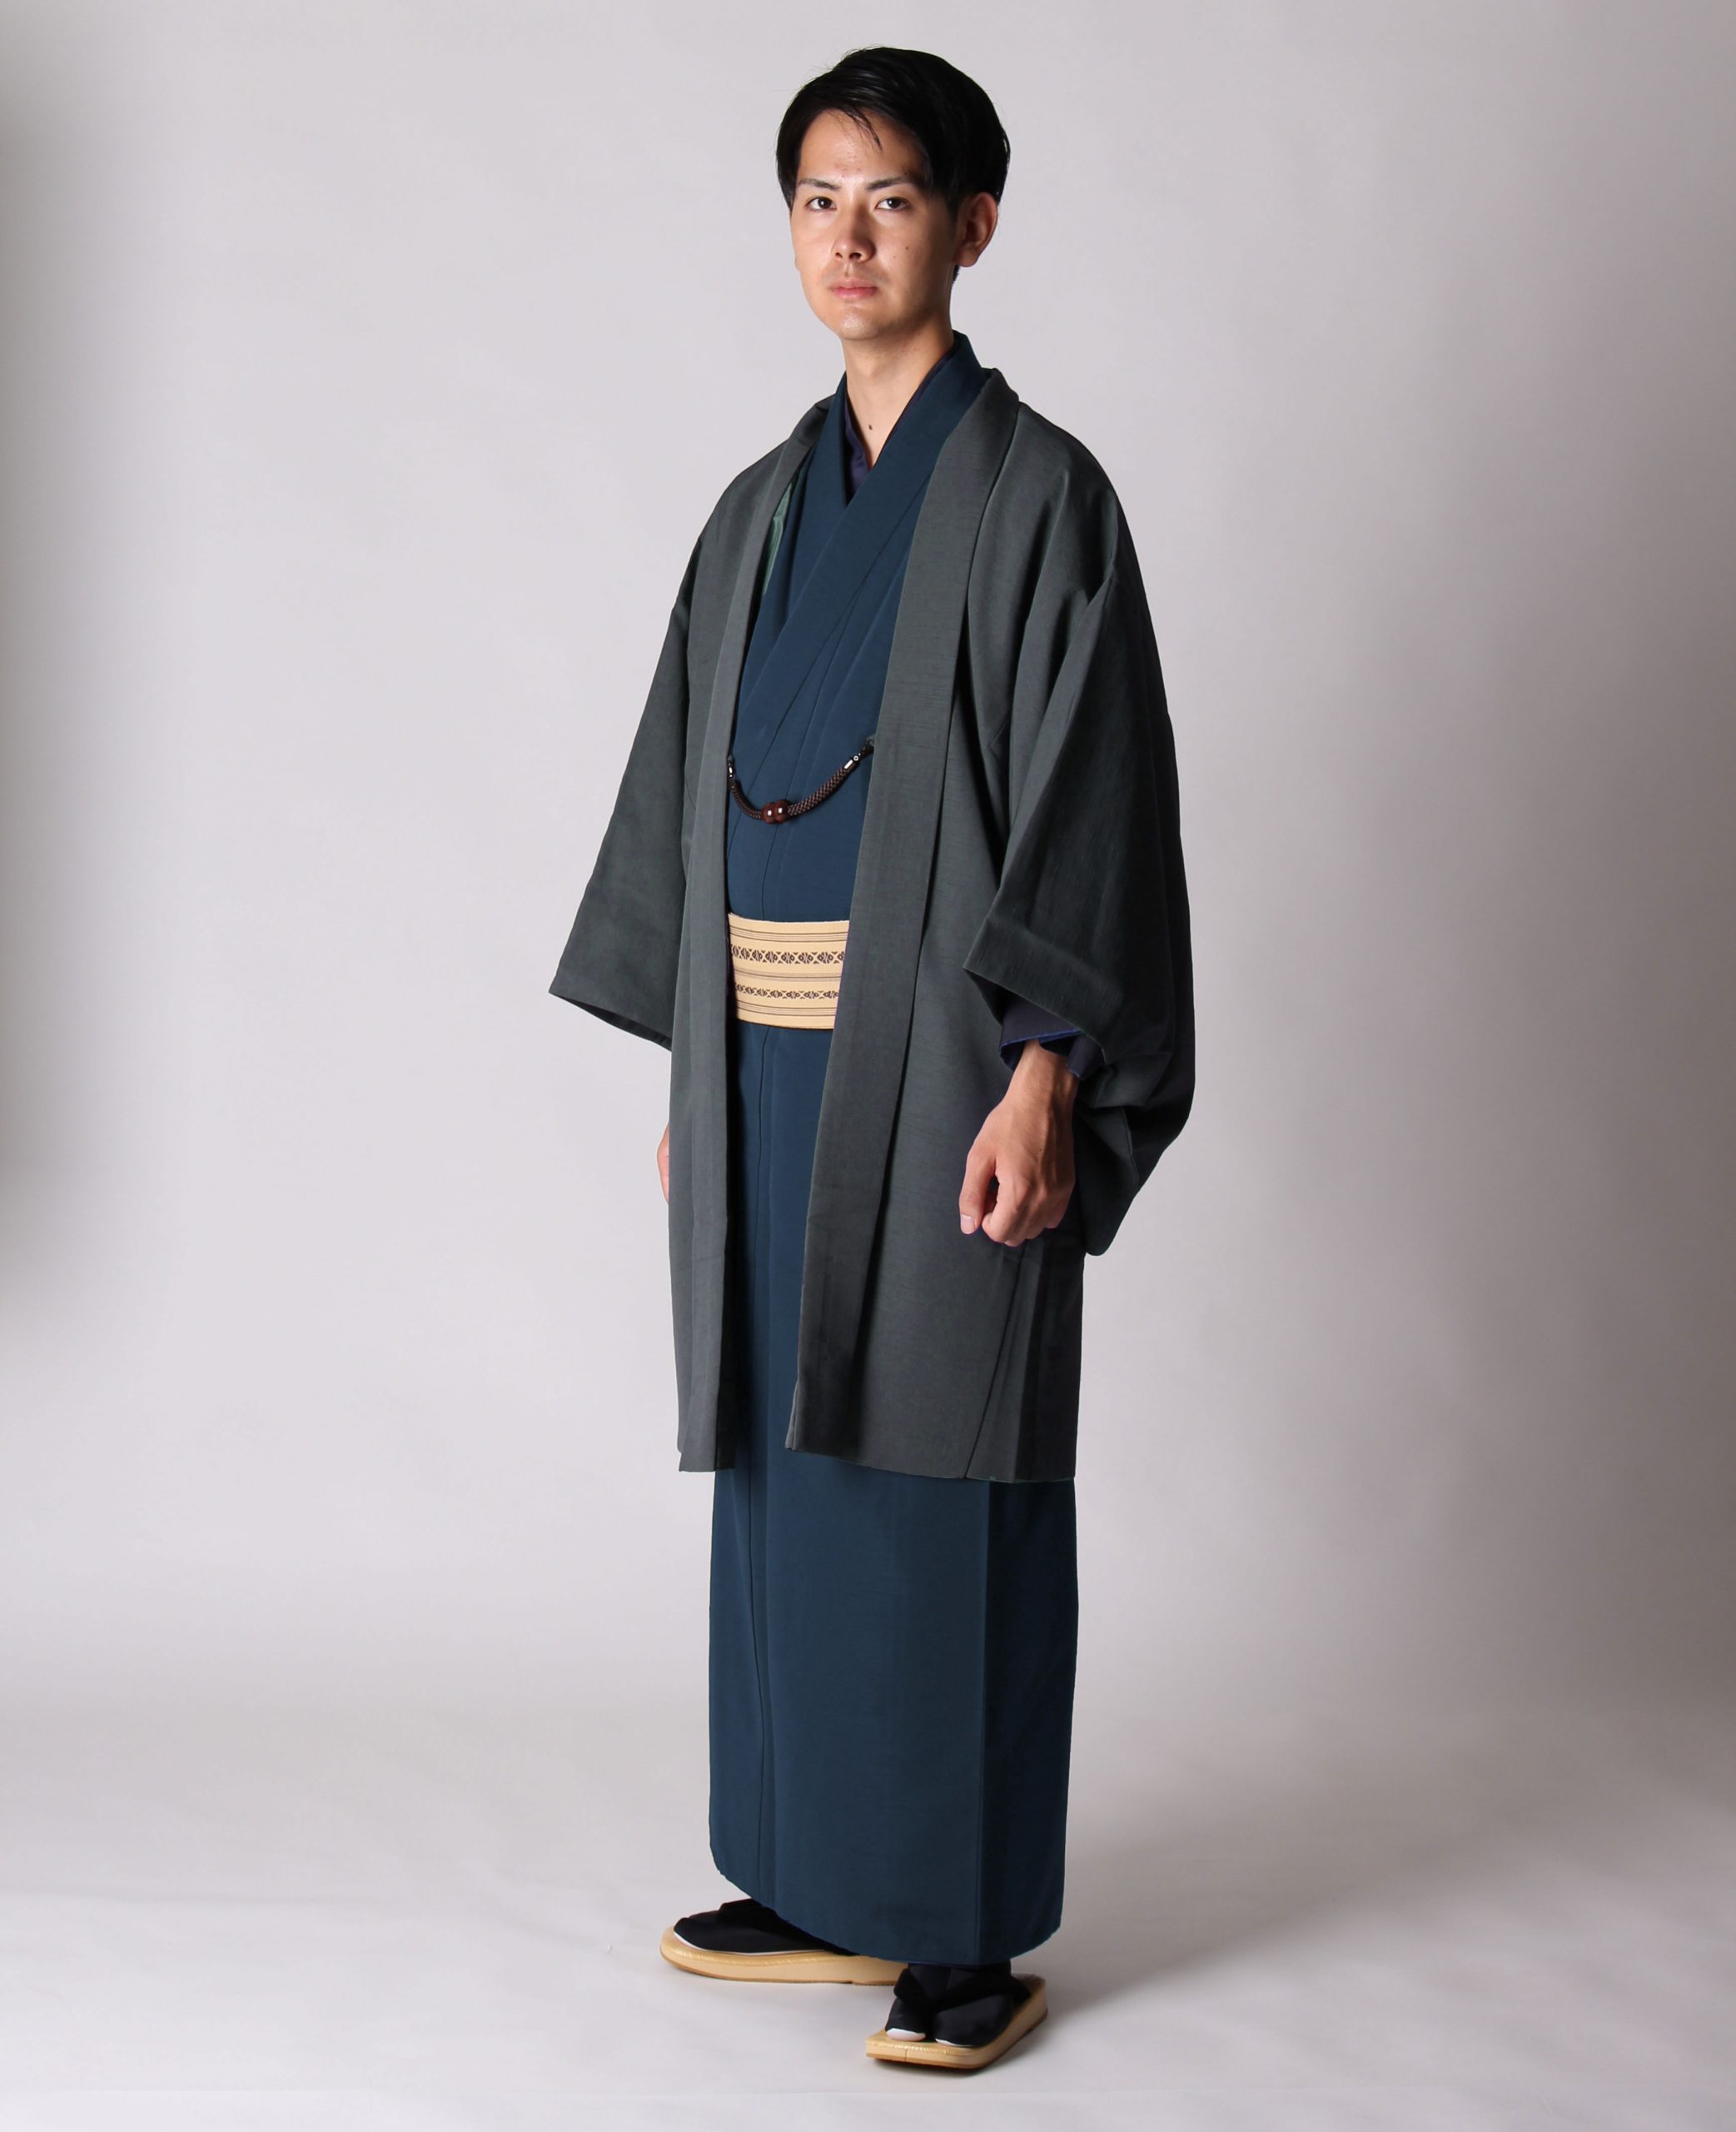 男着物の加藤商店ブログ »紺の着物と羽織の組み合わせ | 男着物の加藤商店ブログ